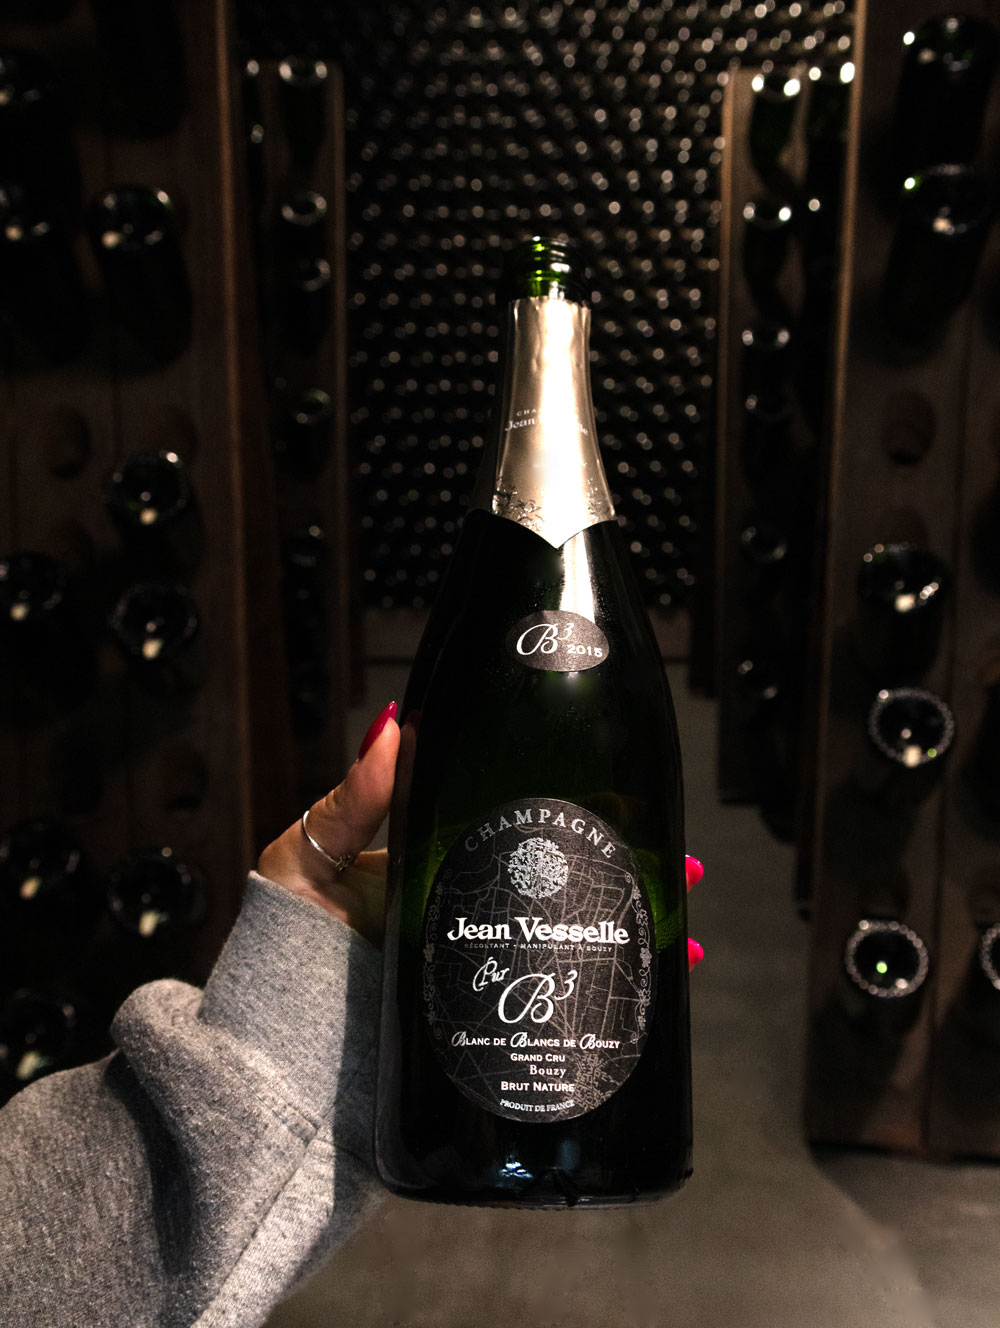 Champagne Jean Vesselle Blanc de Blancs de Bouzy B3 Brut Nature Grand Cru 2015